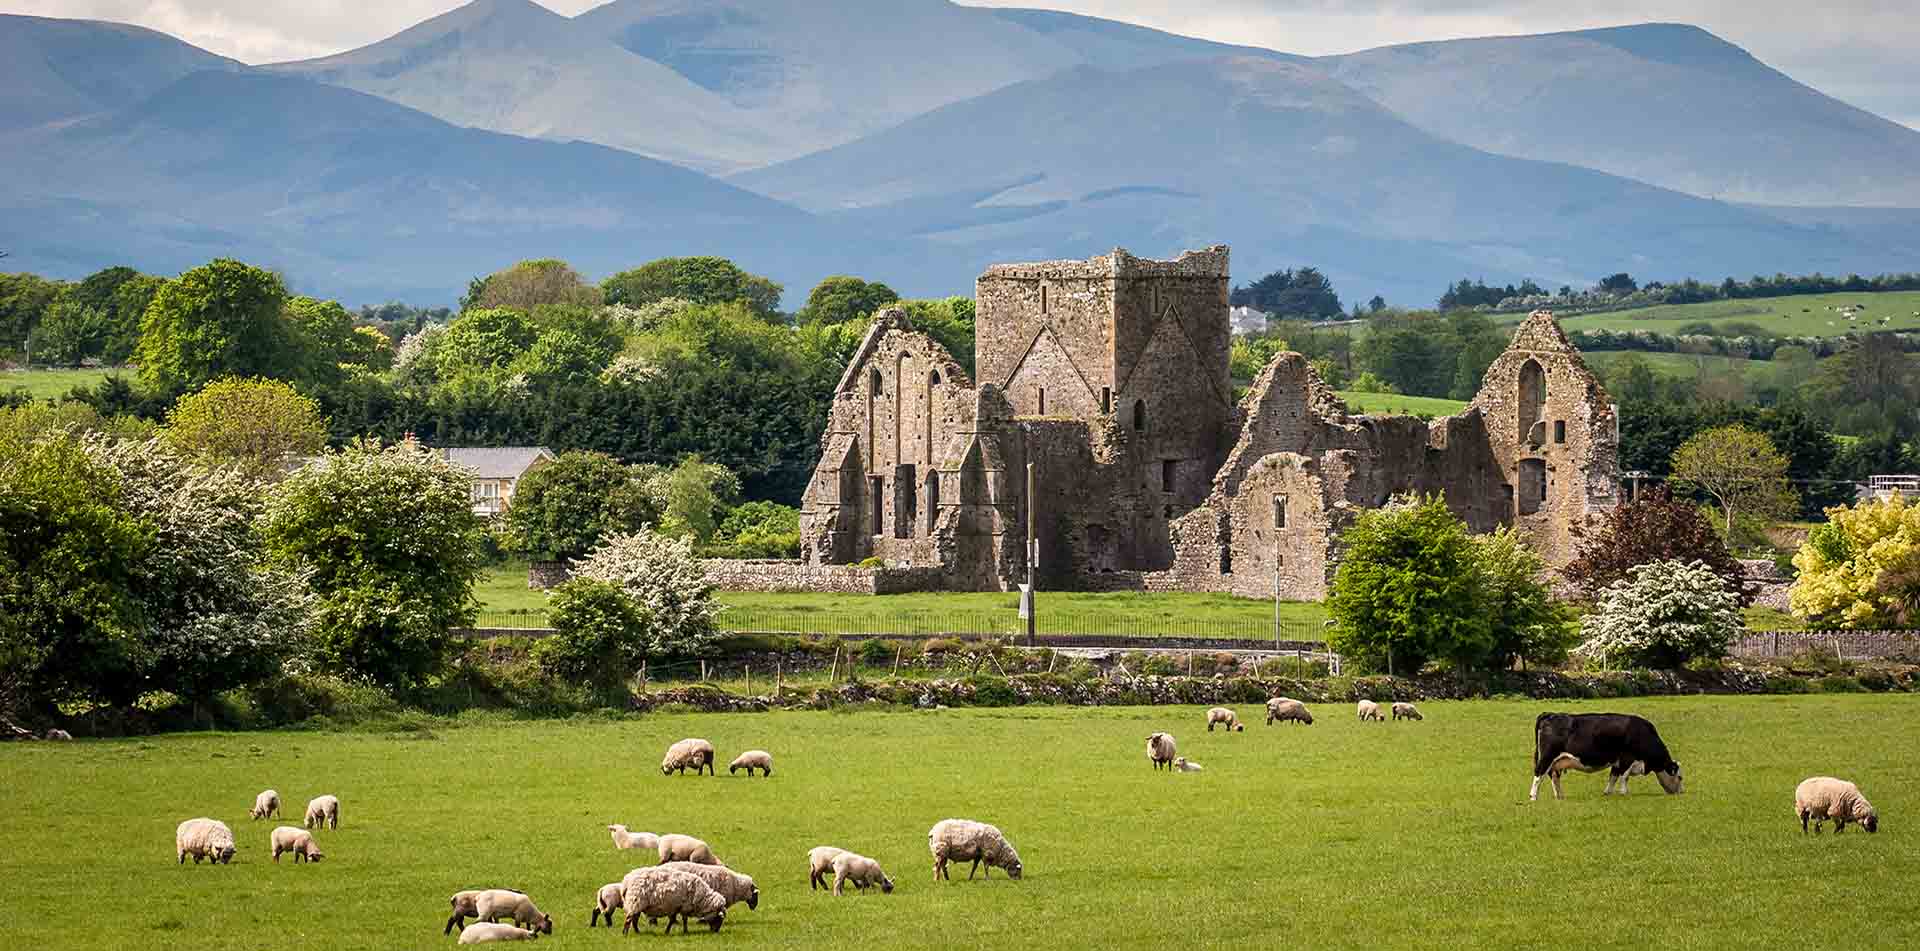 Sheep Grazing Near Castle in Ireland